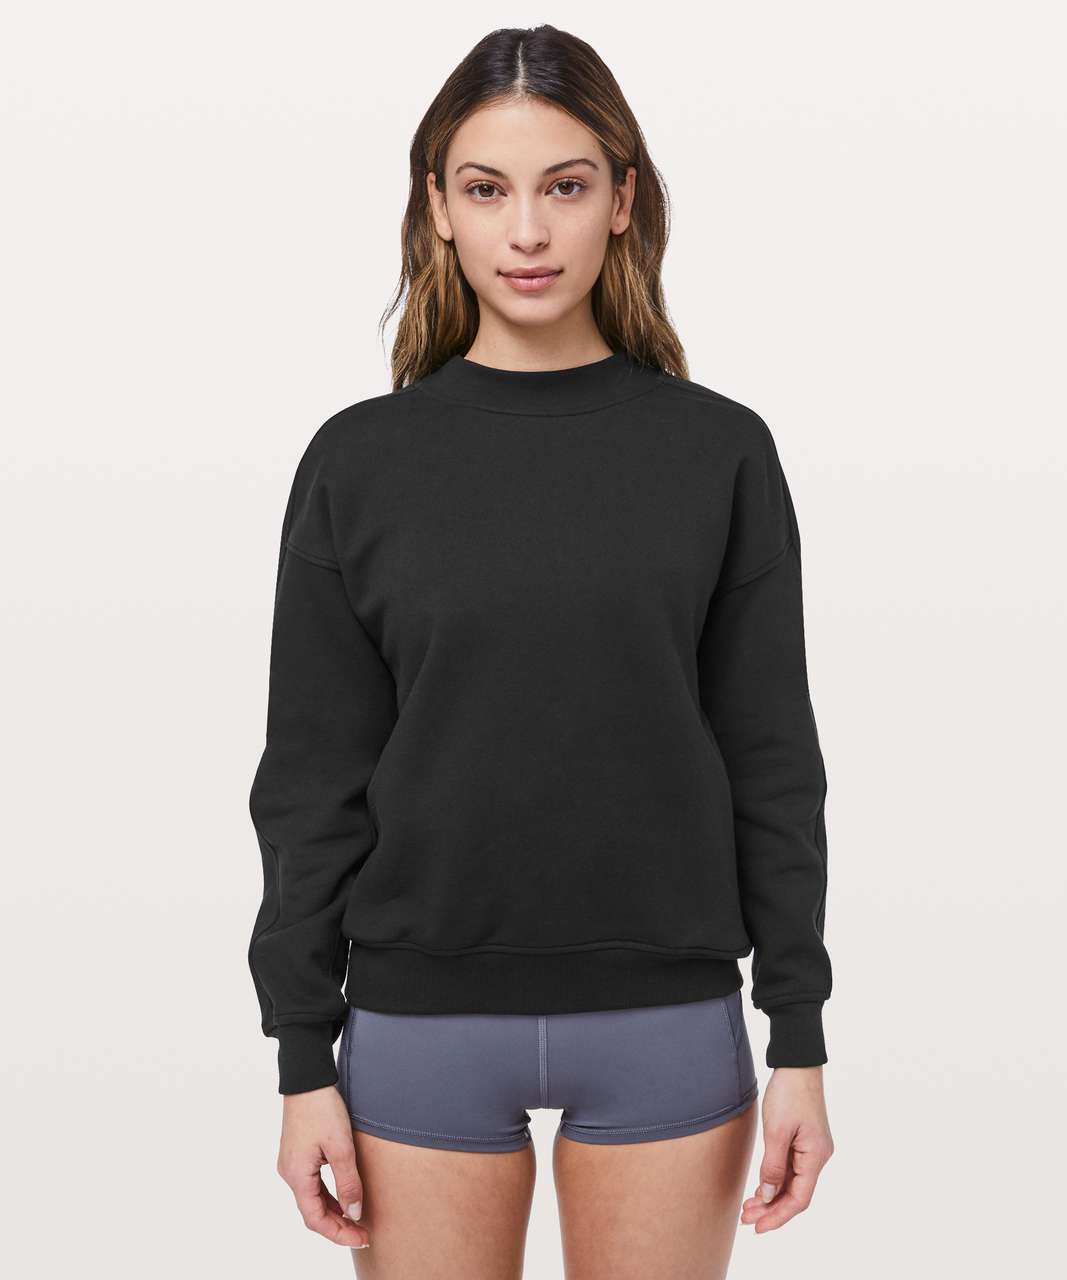 lululemon black sweatshirt